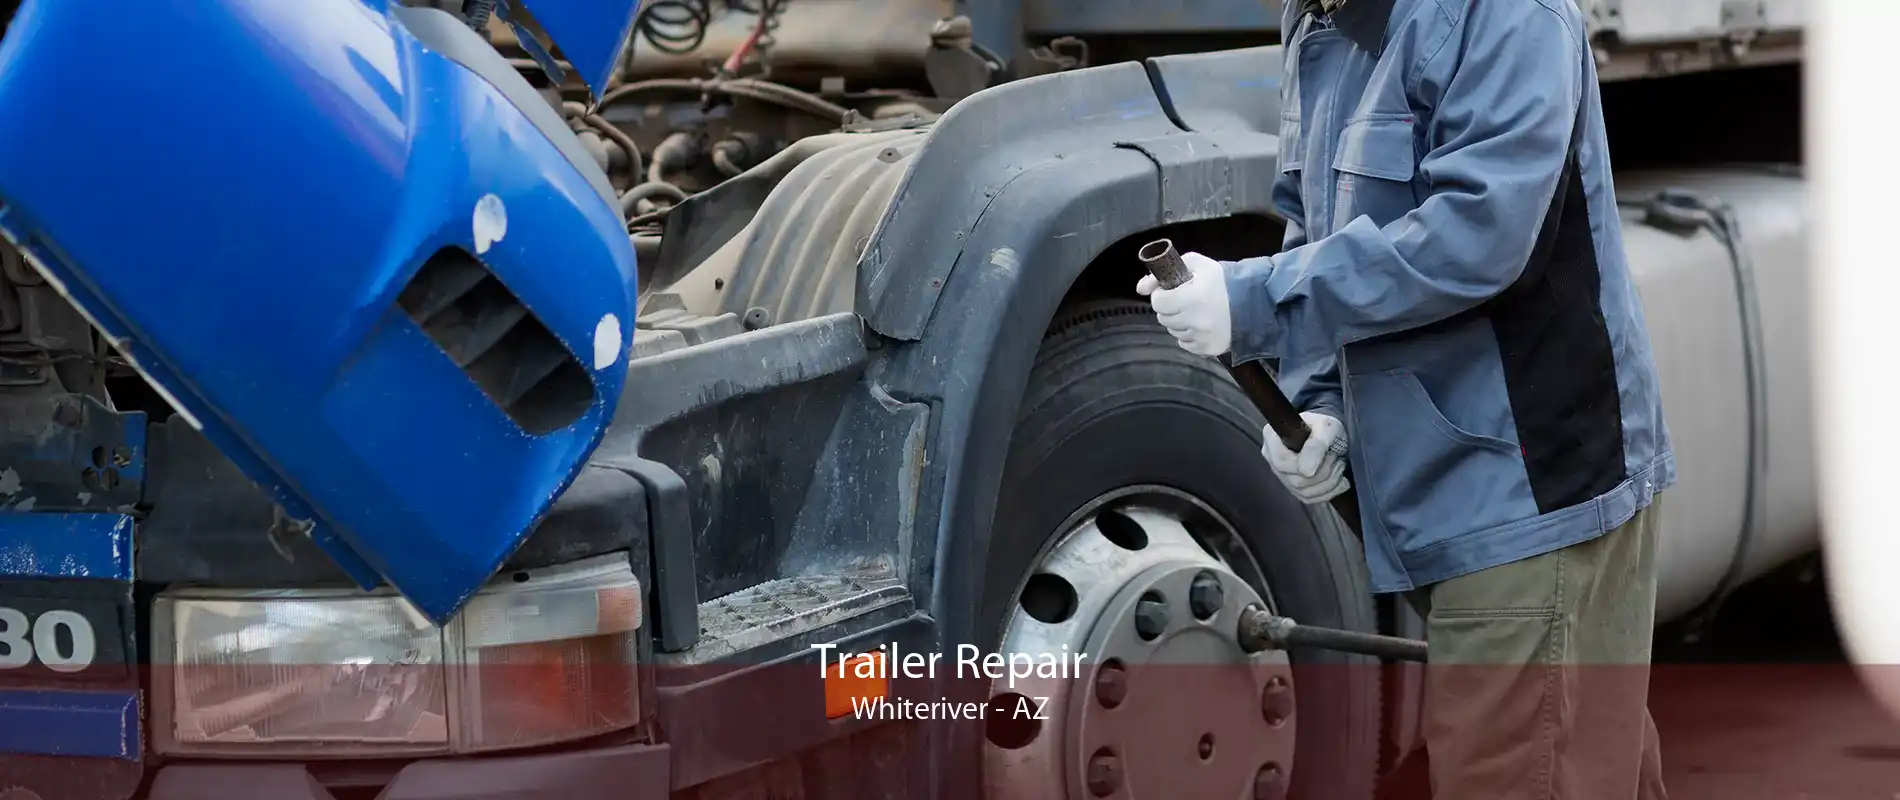 Trailer Repair Whiteriver - AZ